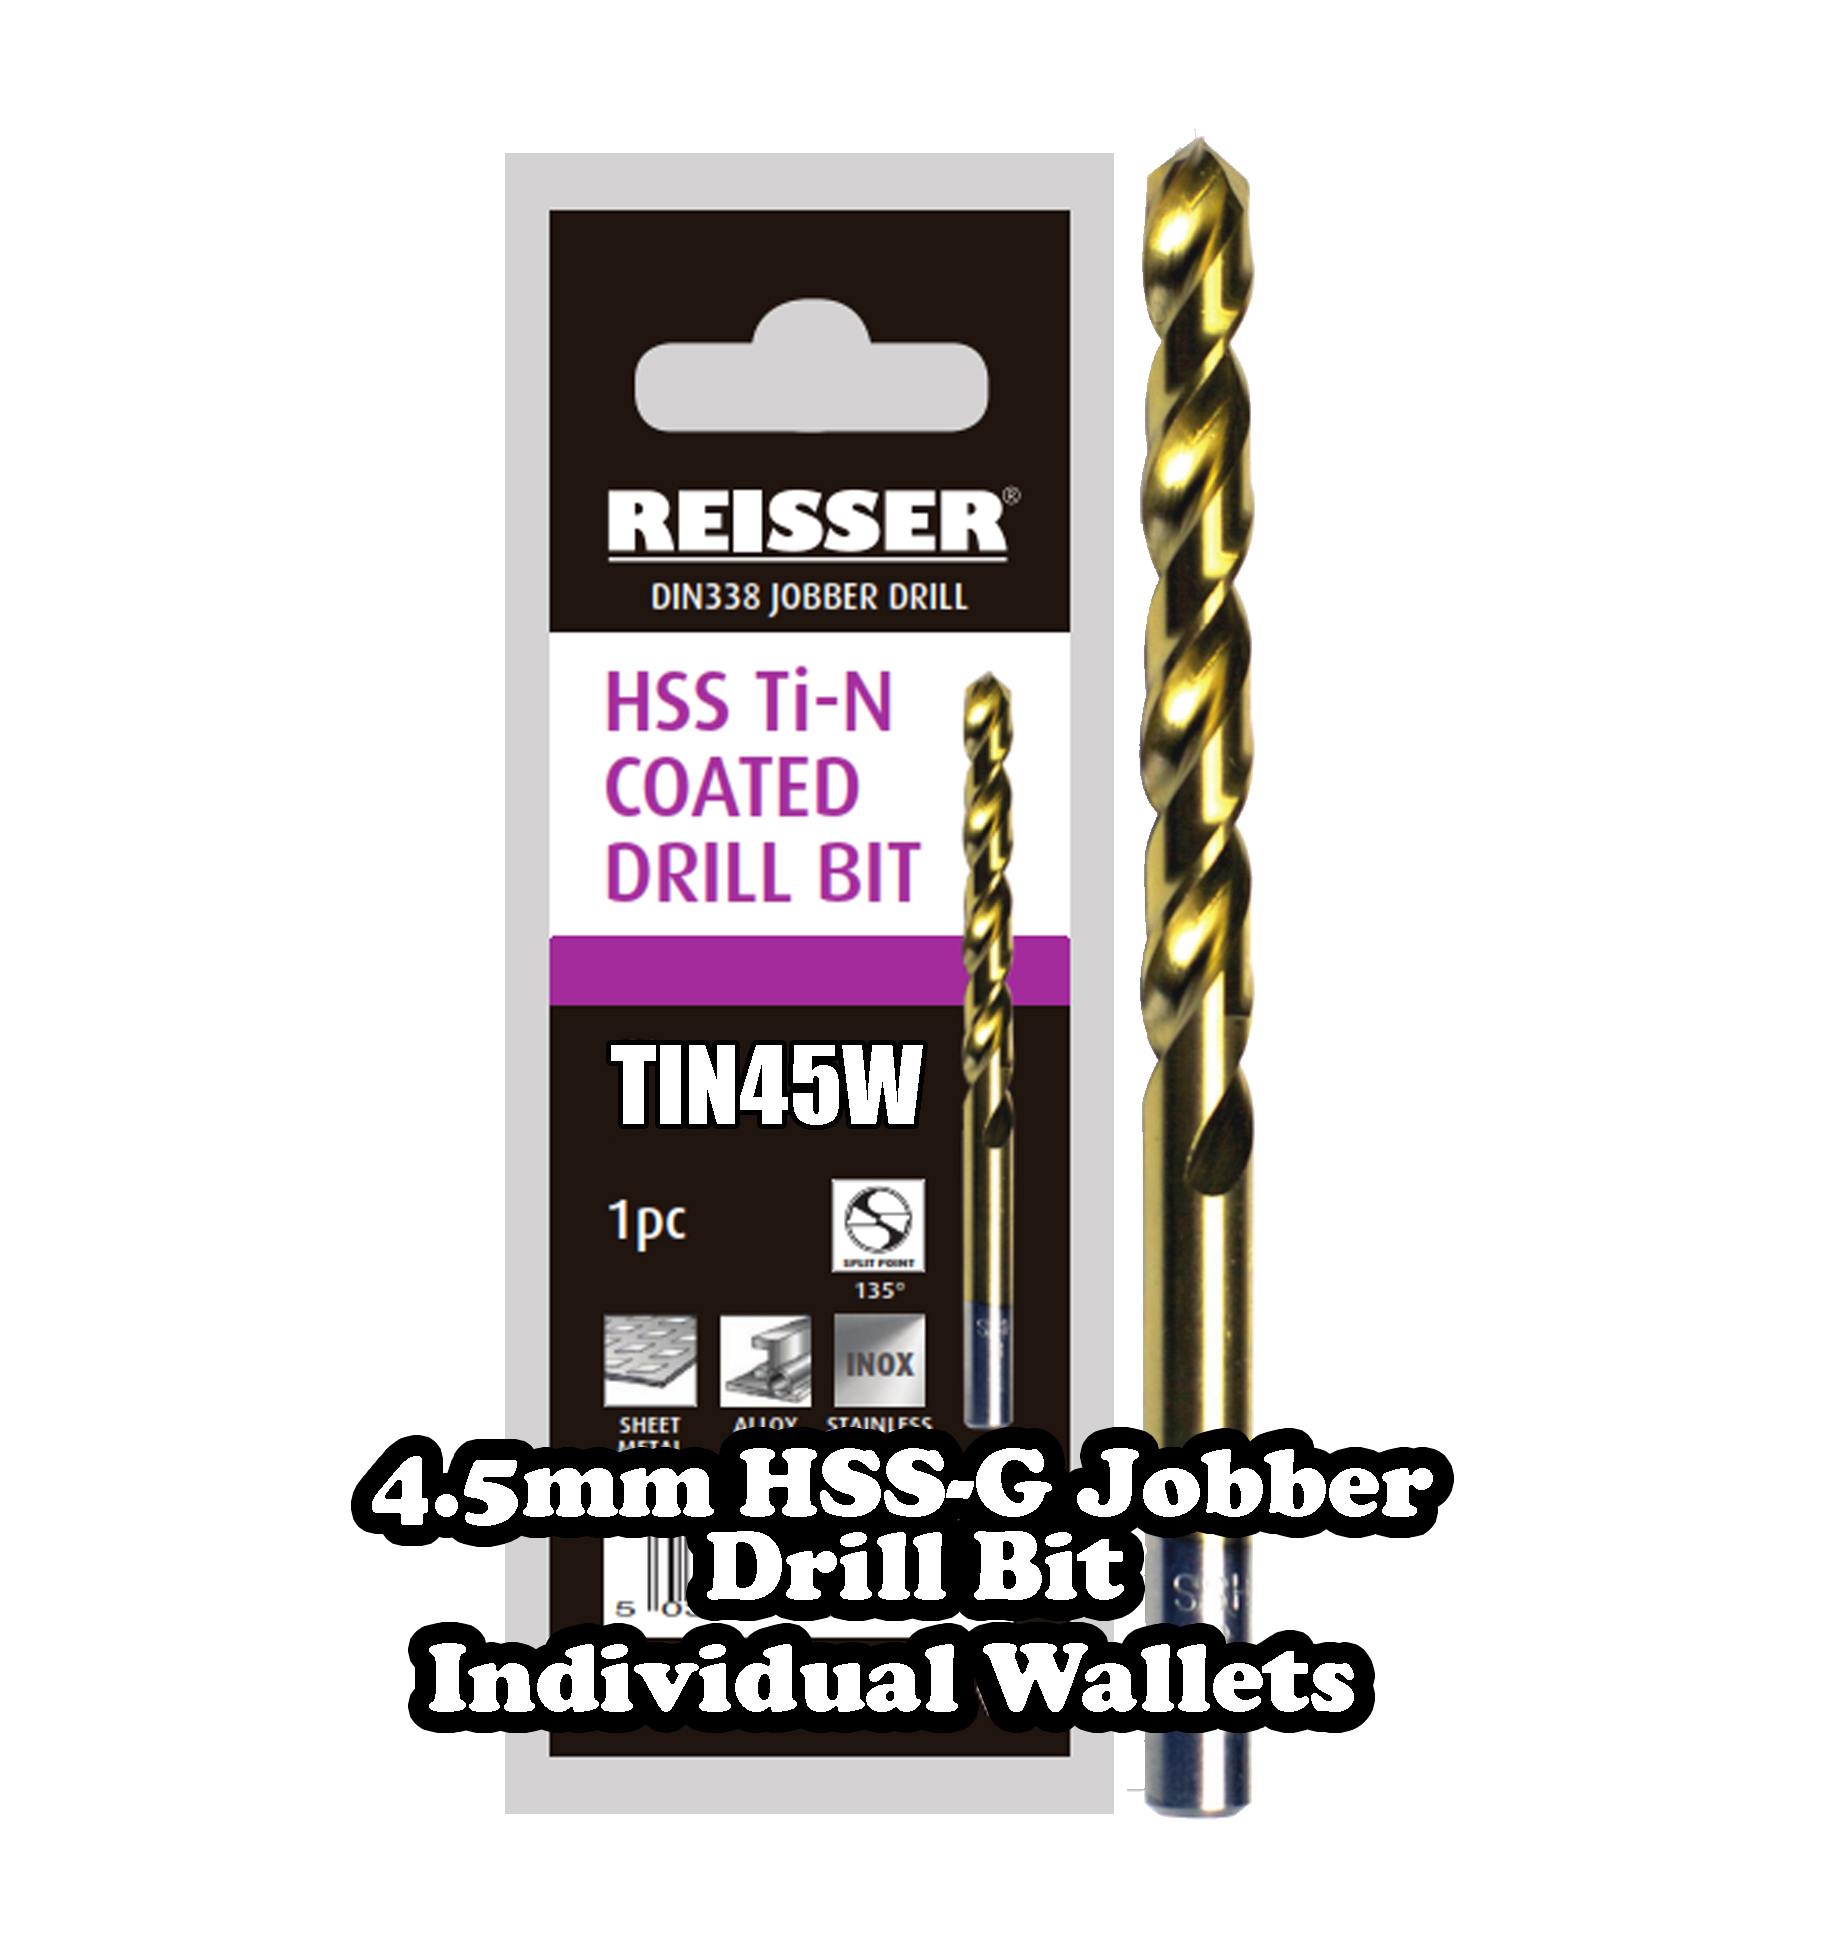 4.5mm HSS Jobber Drill Bit (SINGLE WALLET)